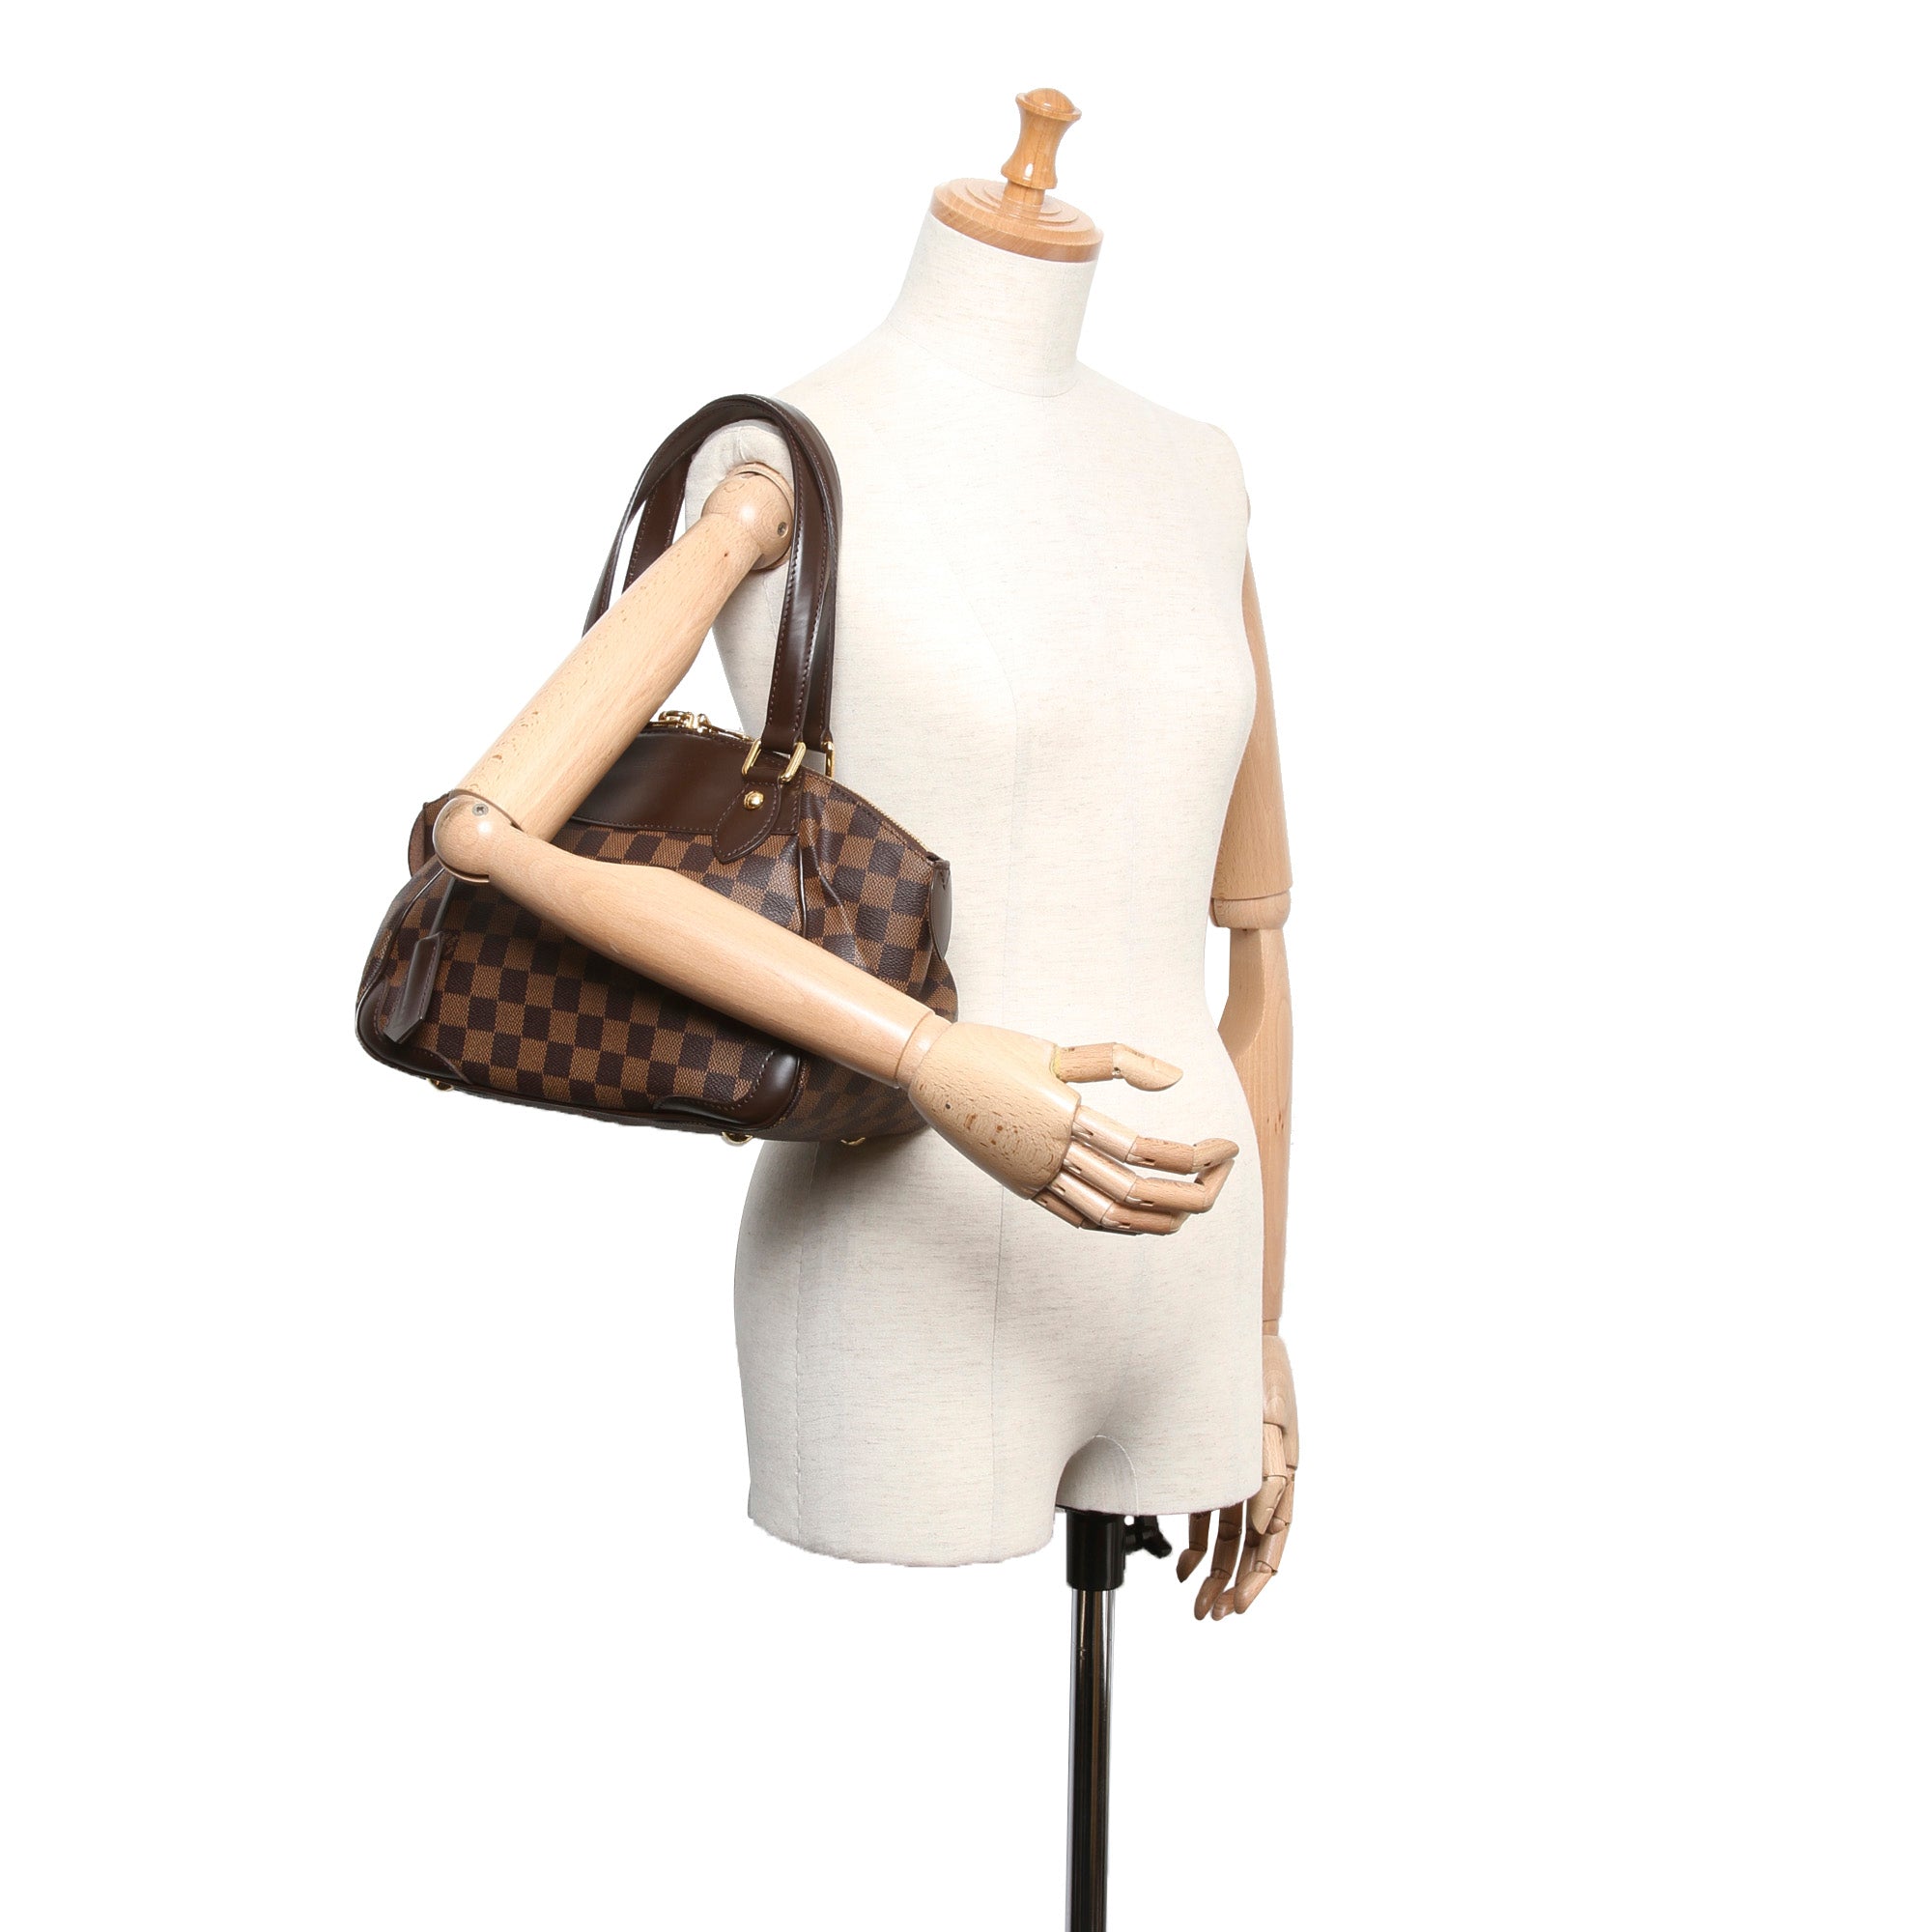 Louis Vuitton Verona PM Damier Ebene Canvas Handbag 